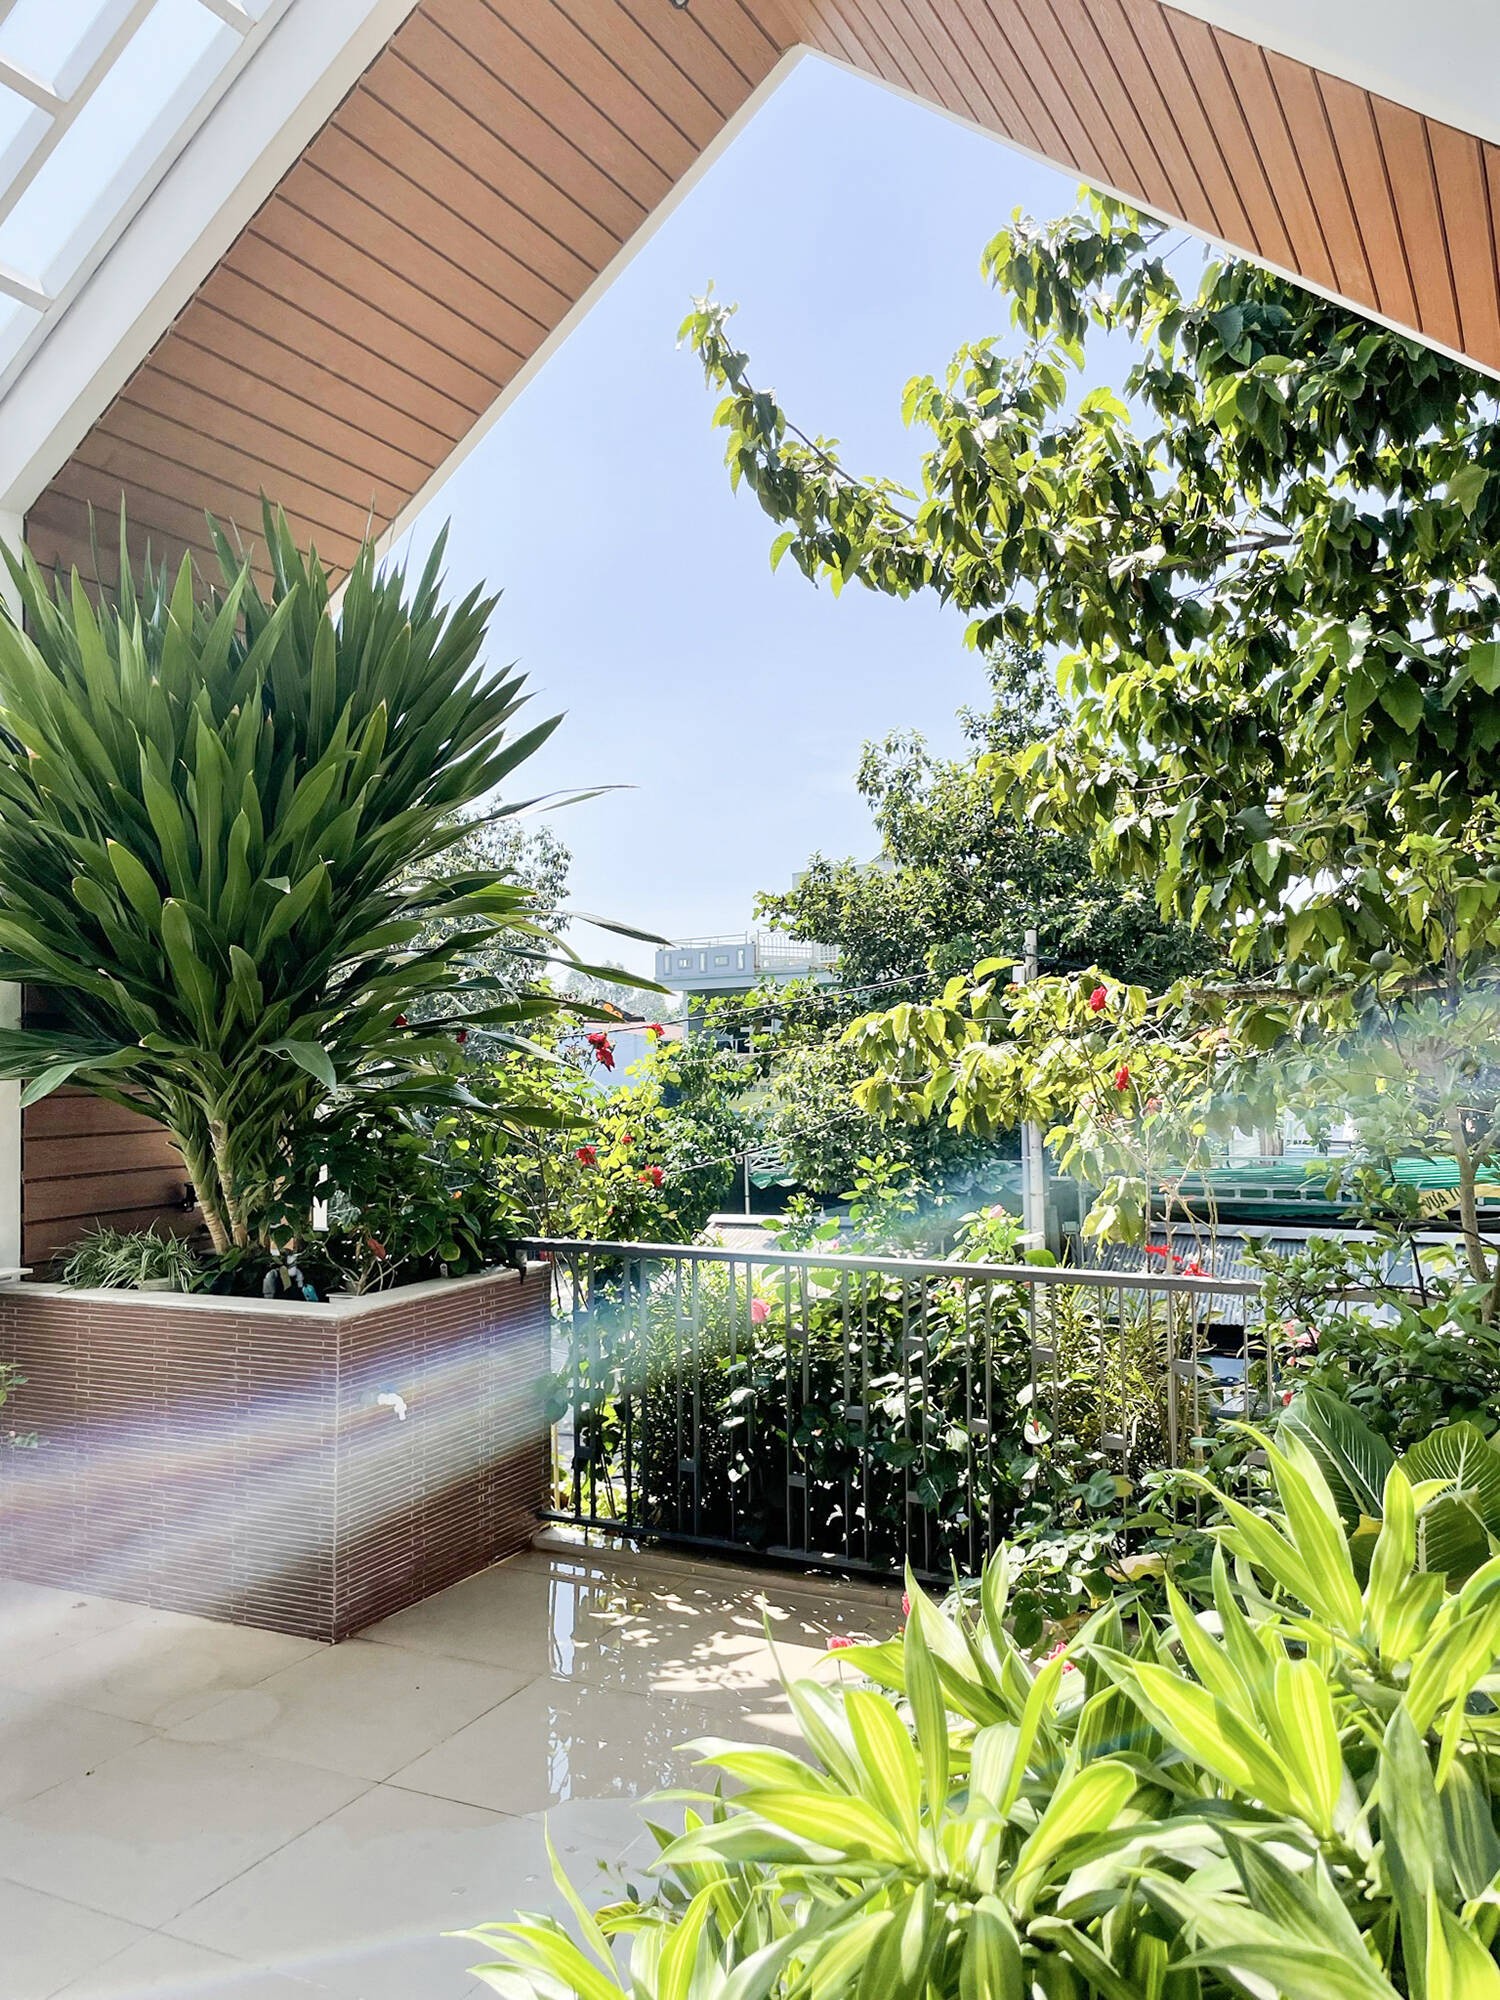 Cây trong vườn xanh tốt, giúp căn nhà có được không khí thoải mái, dễ chịu